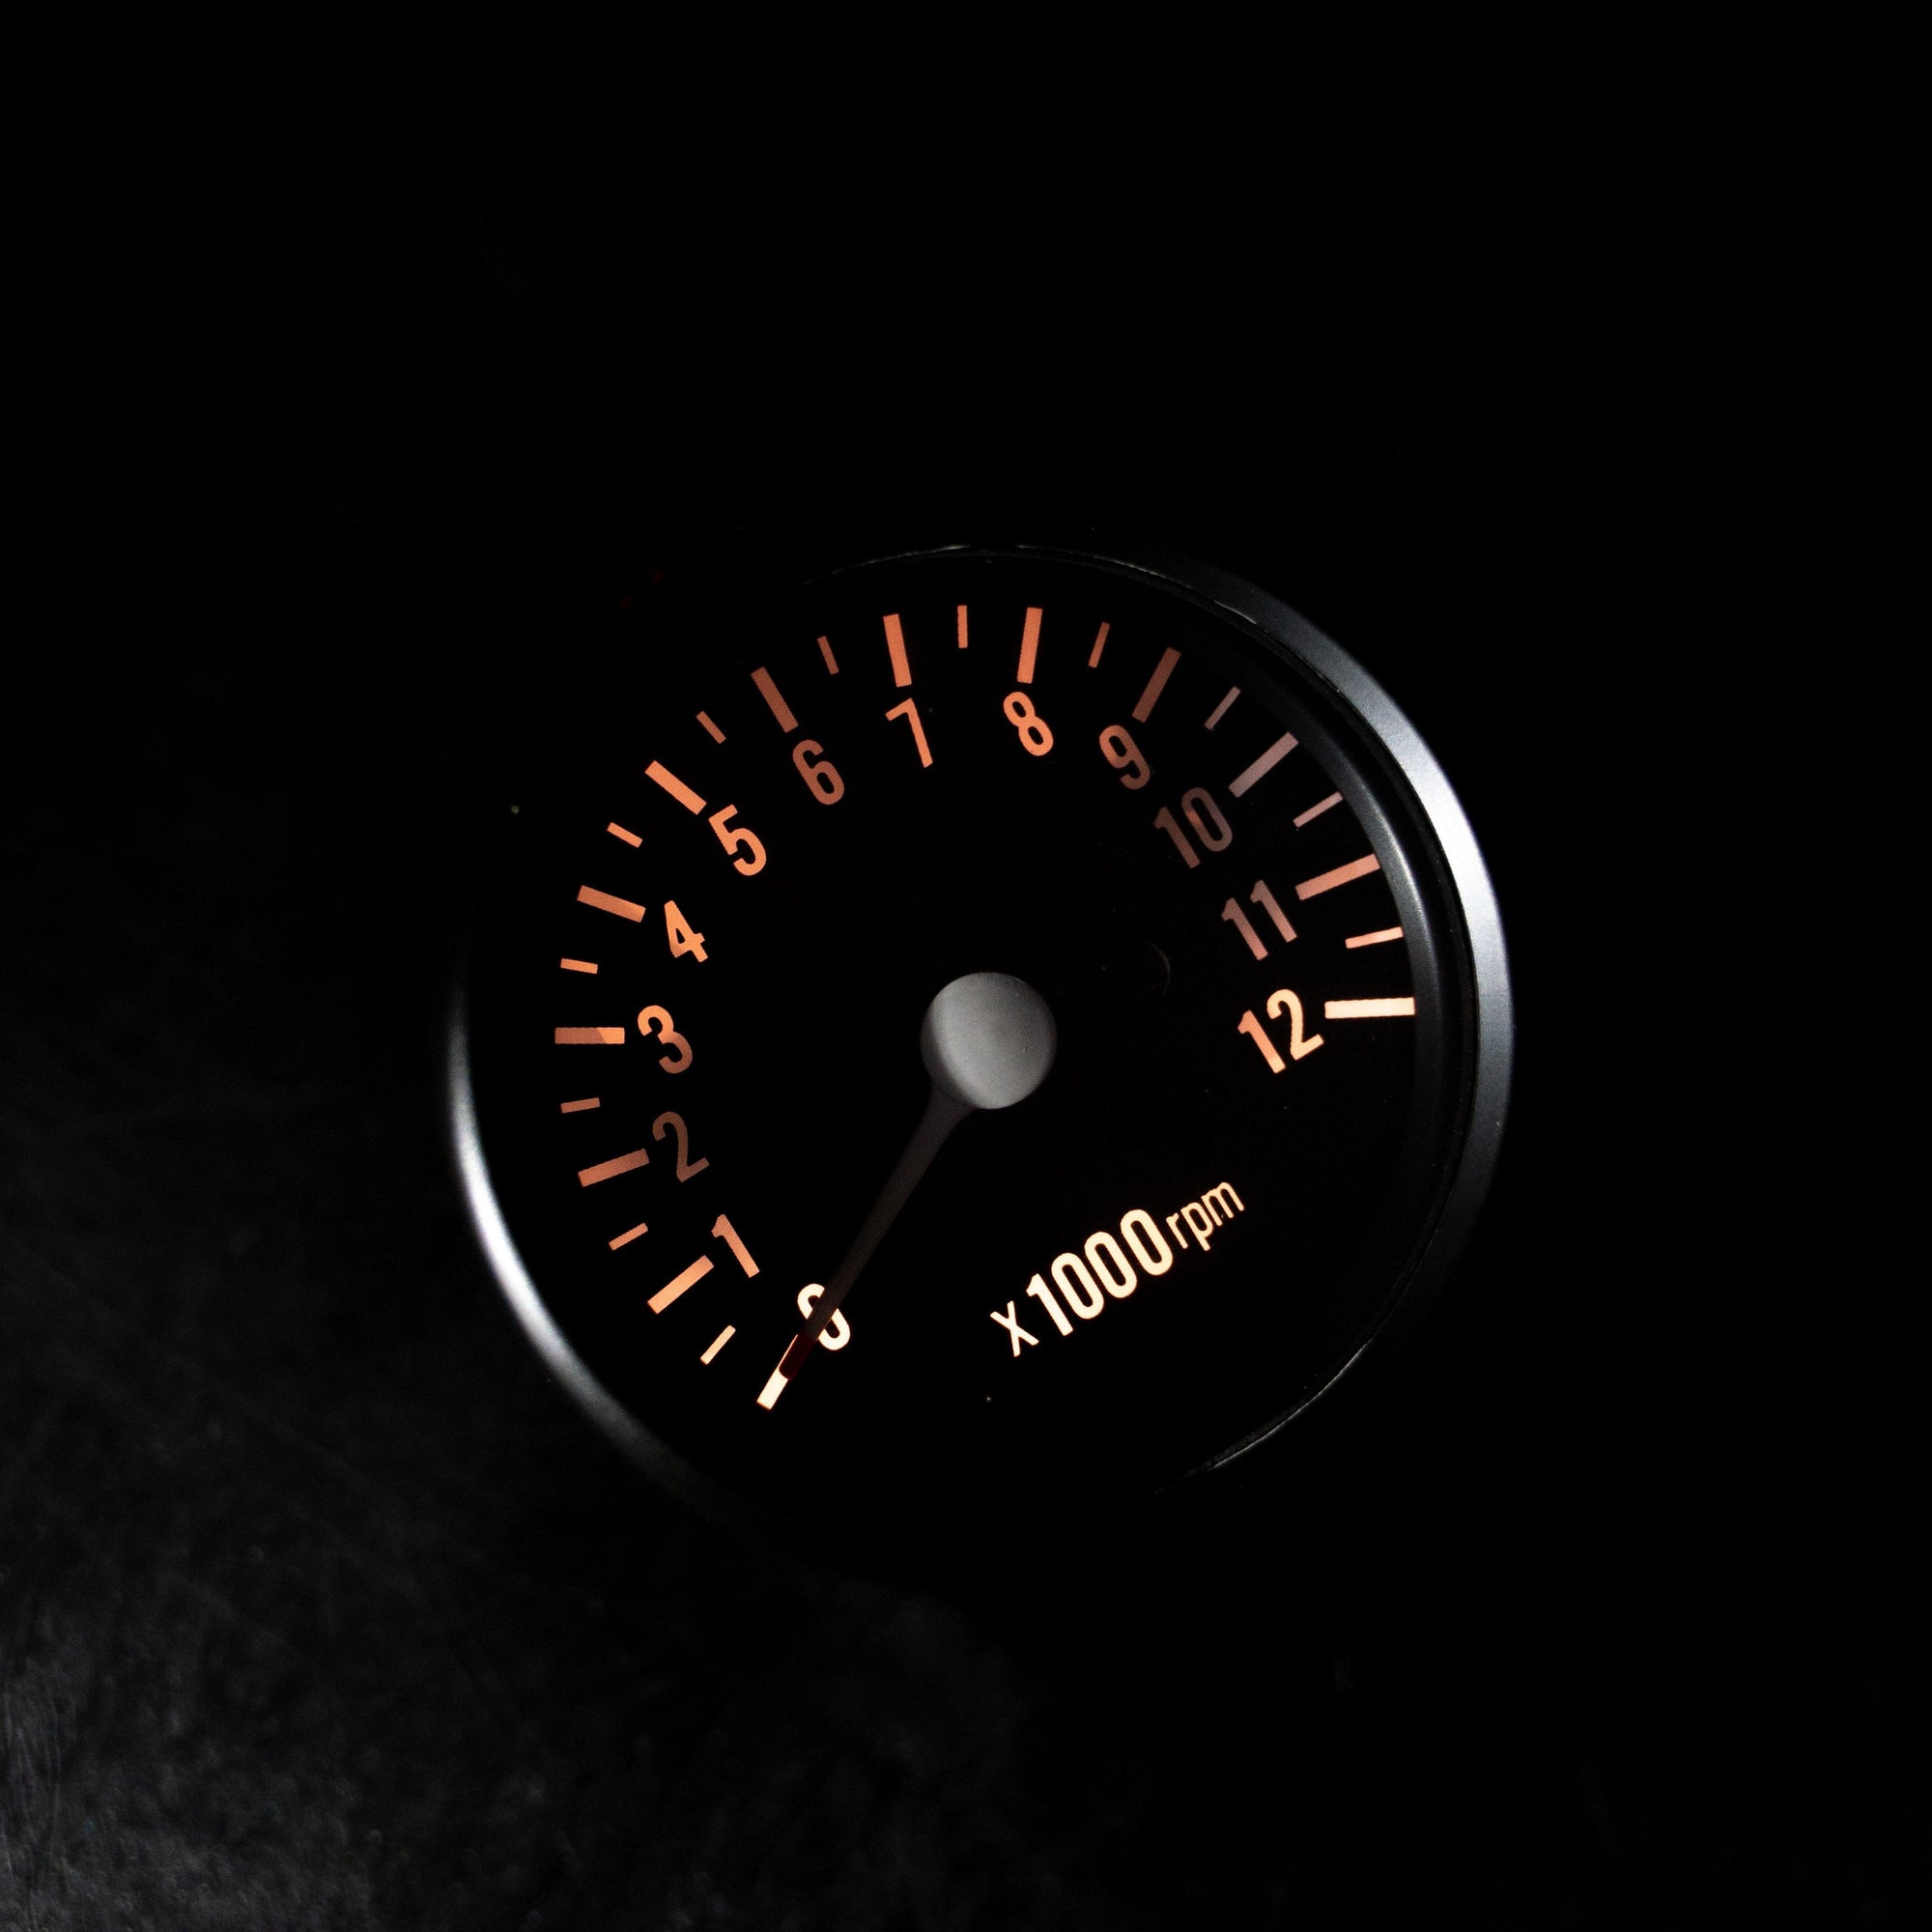 Black Mini Tachometer (7:1 Ratio)